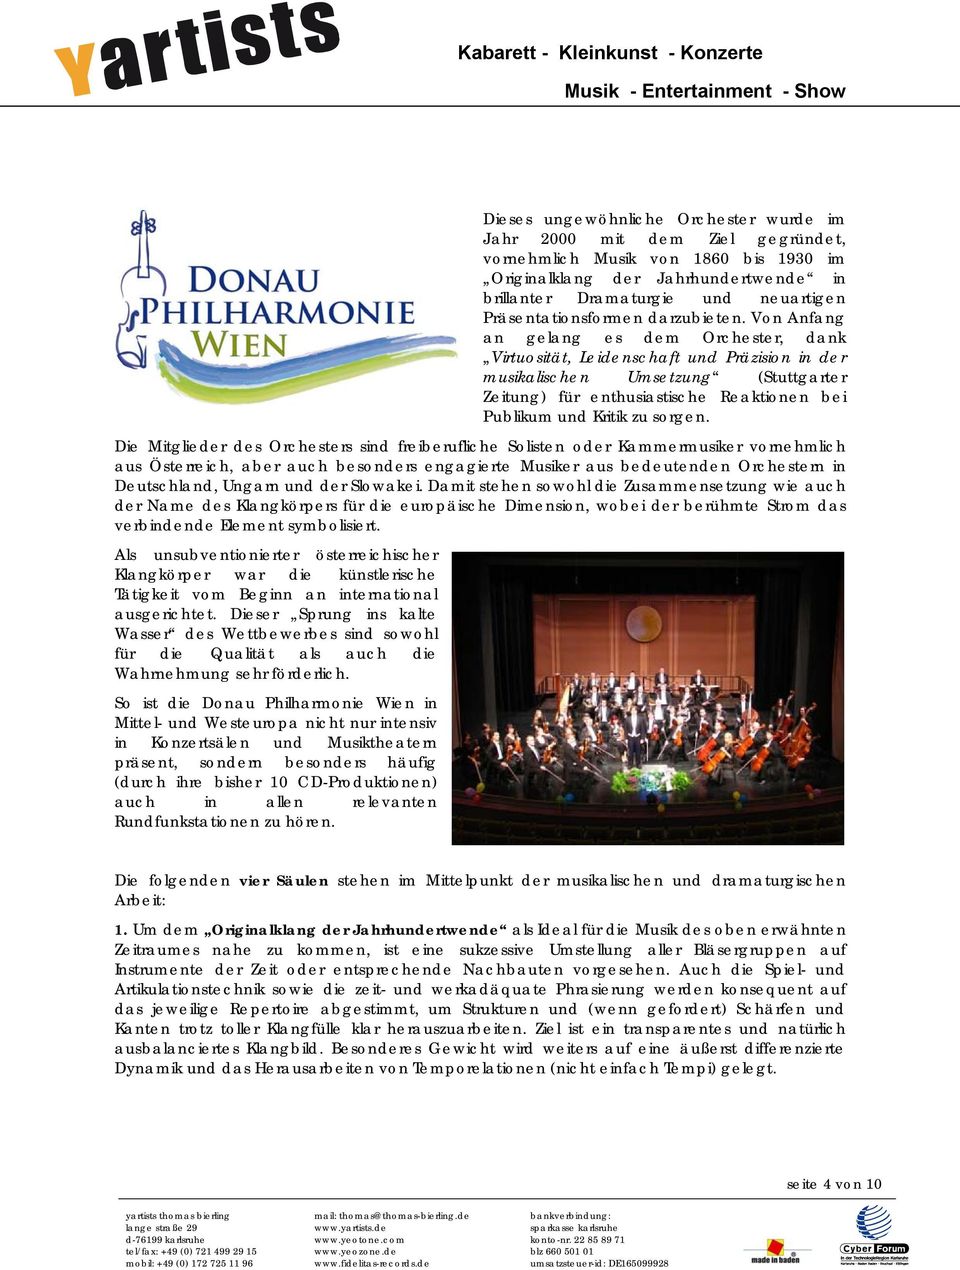 Von Anfang an gelang es dem Orchester, dank Virtuosität, Leidenschaft und Präzision in der musikalischen Umsetzung (Stuttgarter Zeitung) für enthusiastische Reaktionen bei Publikum und Kritik zu